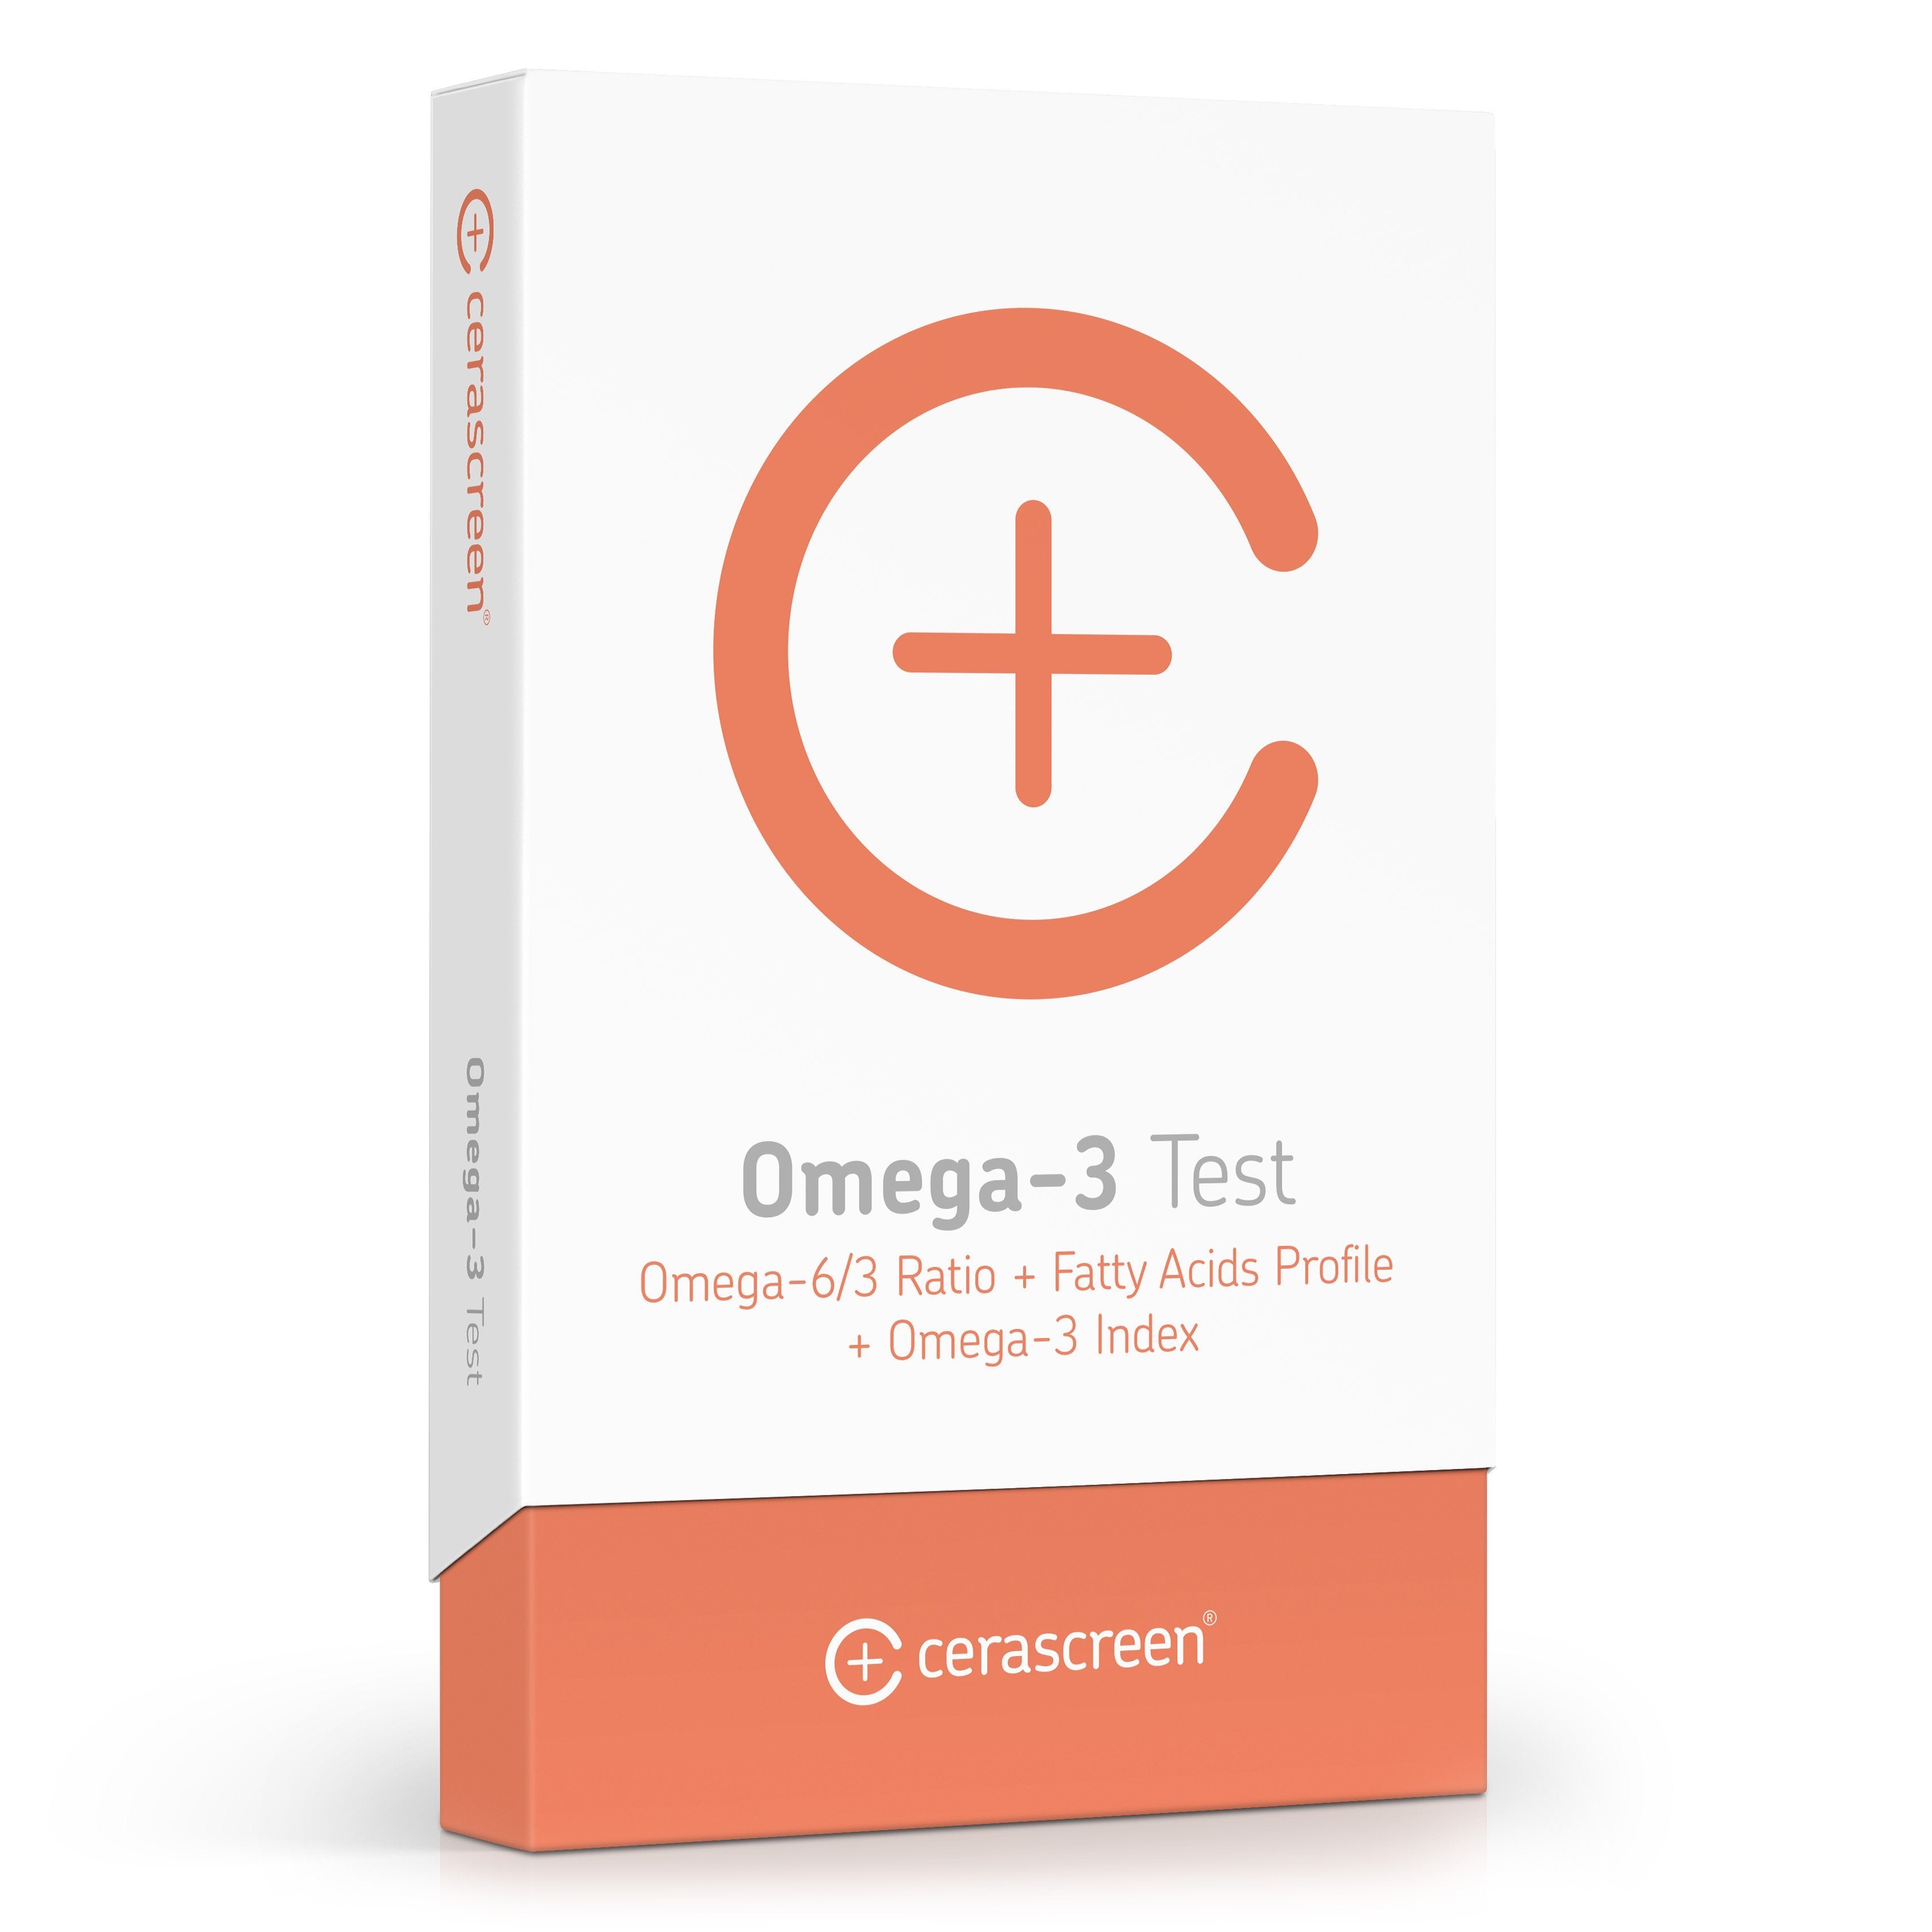 Verpackung des Omega 3 Tests